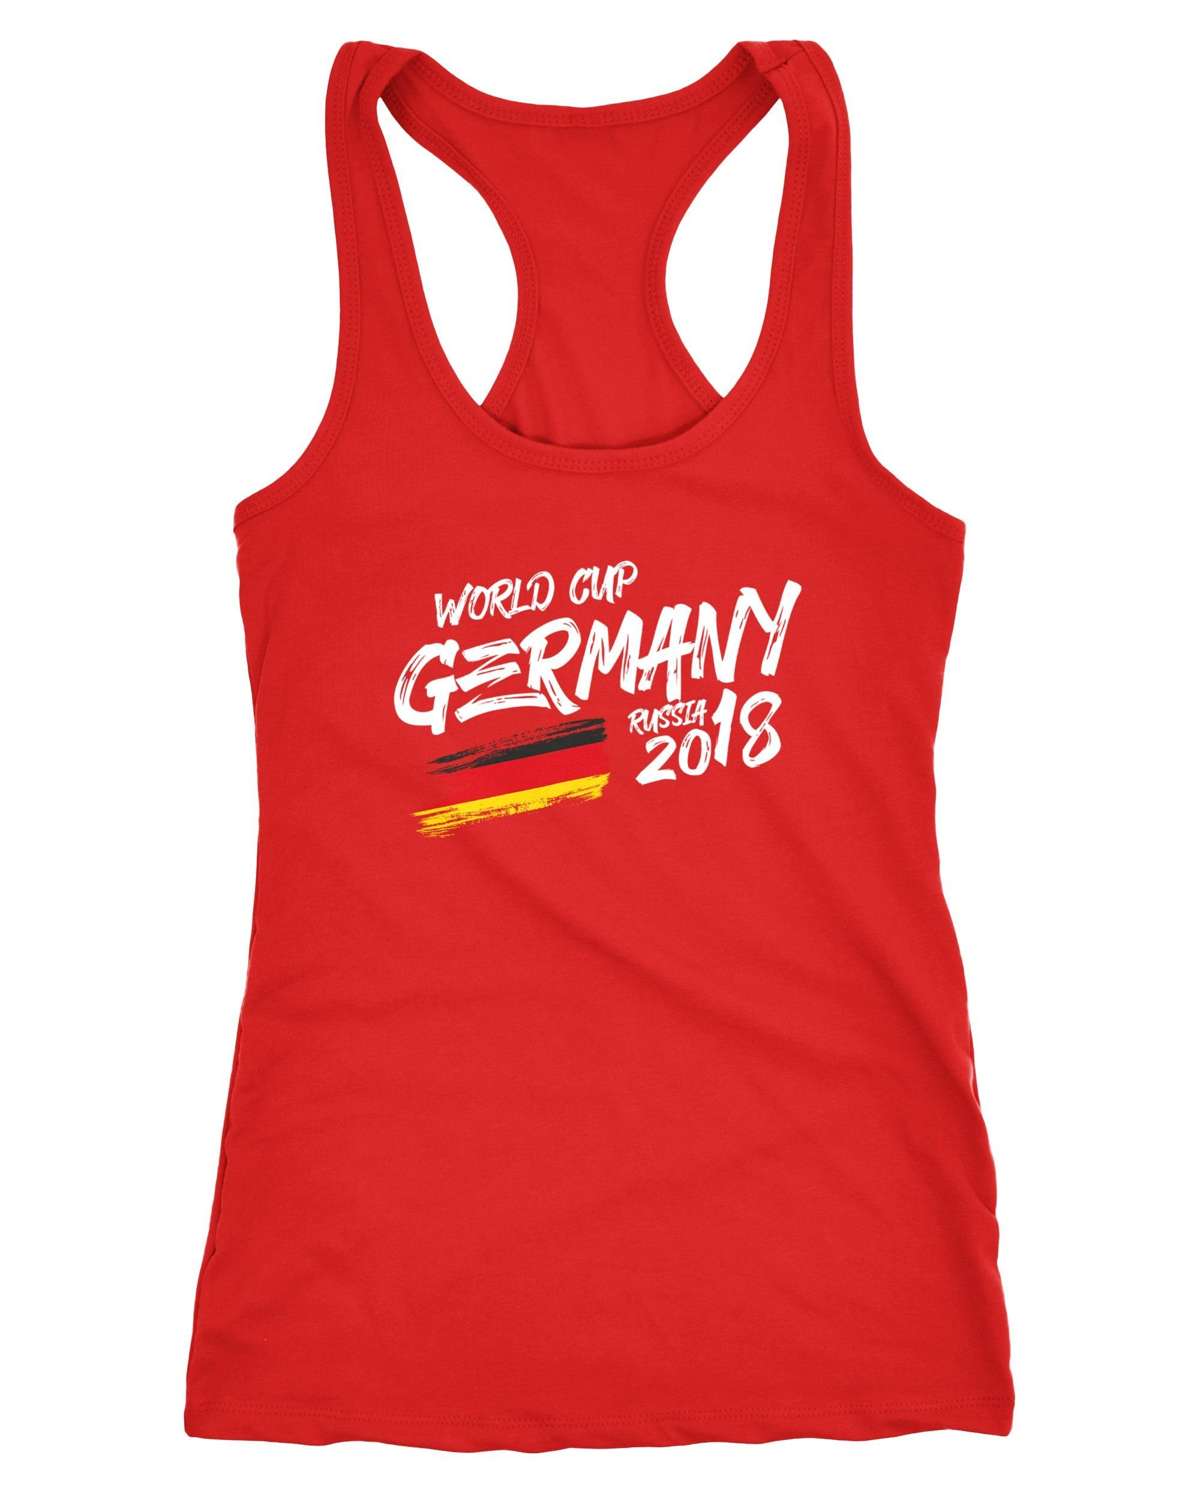 Майка женская, Германия, майка, футболка для болельщика чемпионата мира по футболу, чемпионат мира по футболу 2018, Германия ®